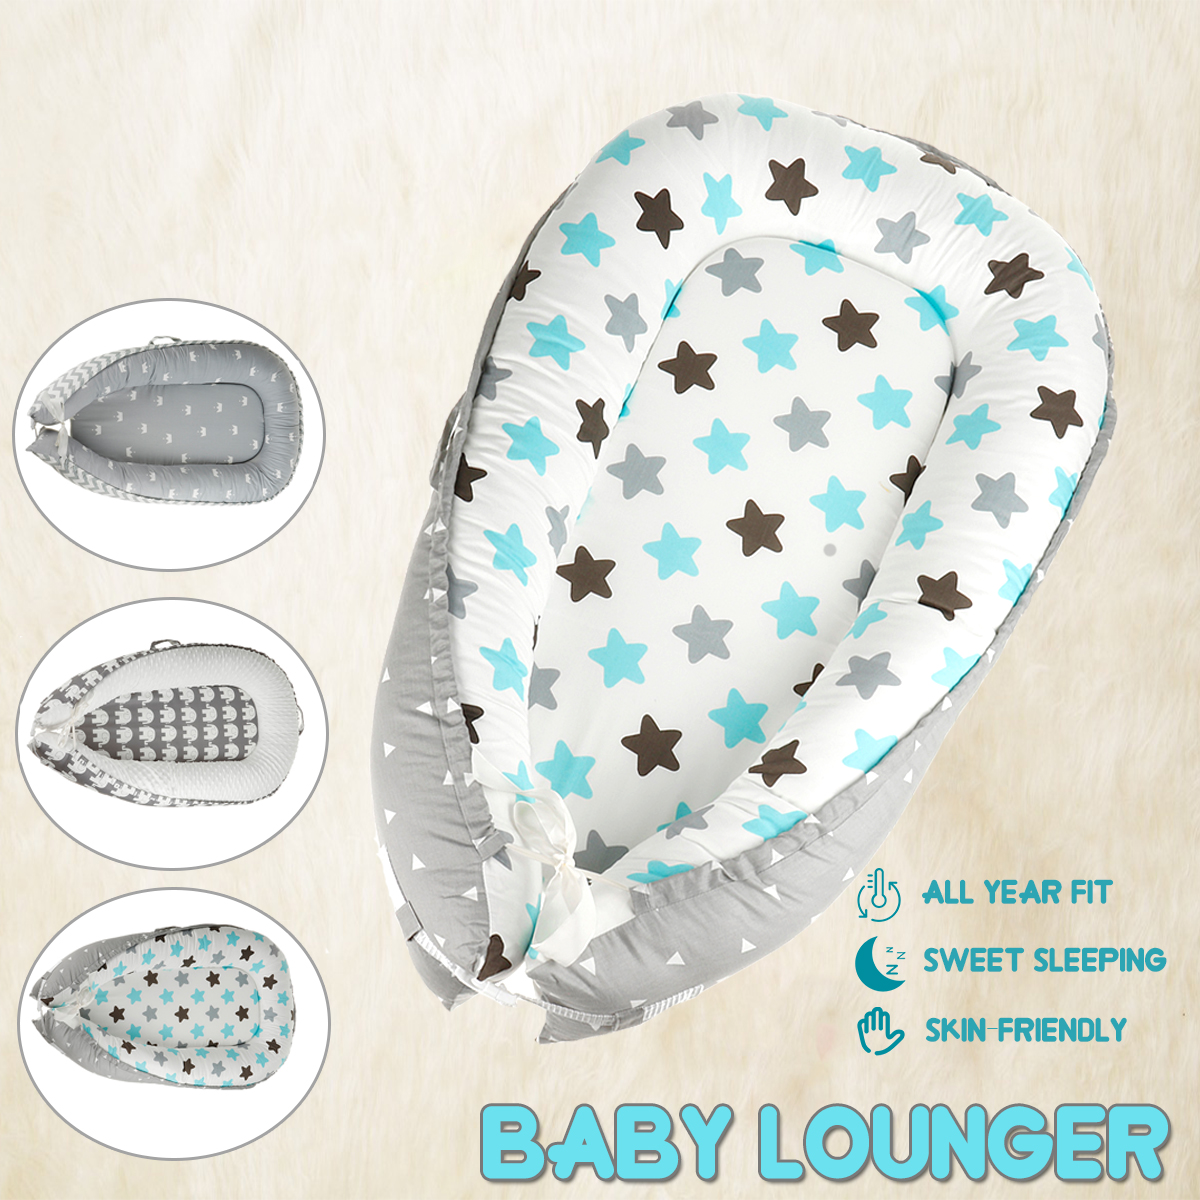 Infant-Soft-Newborn-Baby-Pillow-Cushion-Lounger-Pod-Cot-Bed-Sleeping-Mattre-1974147-2